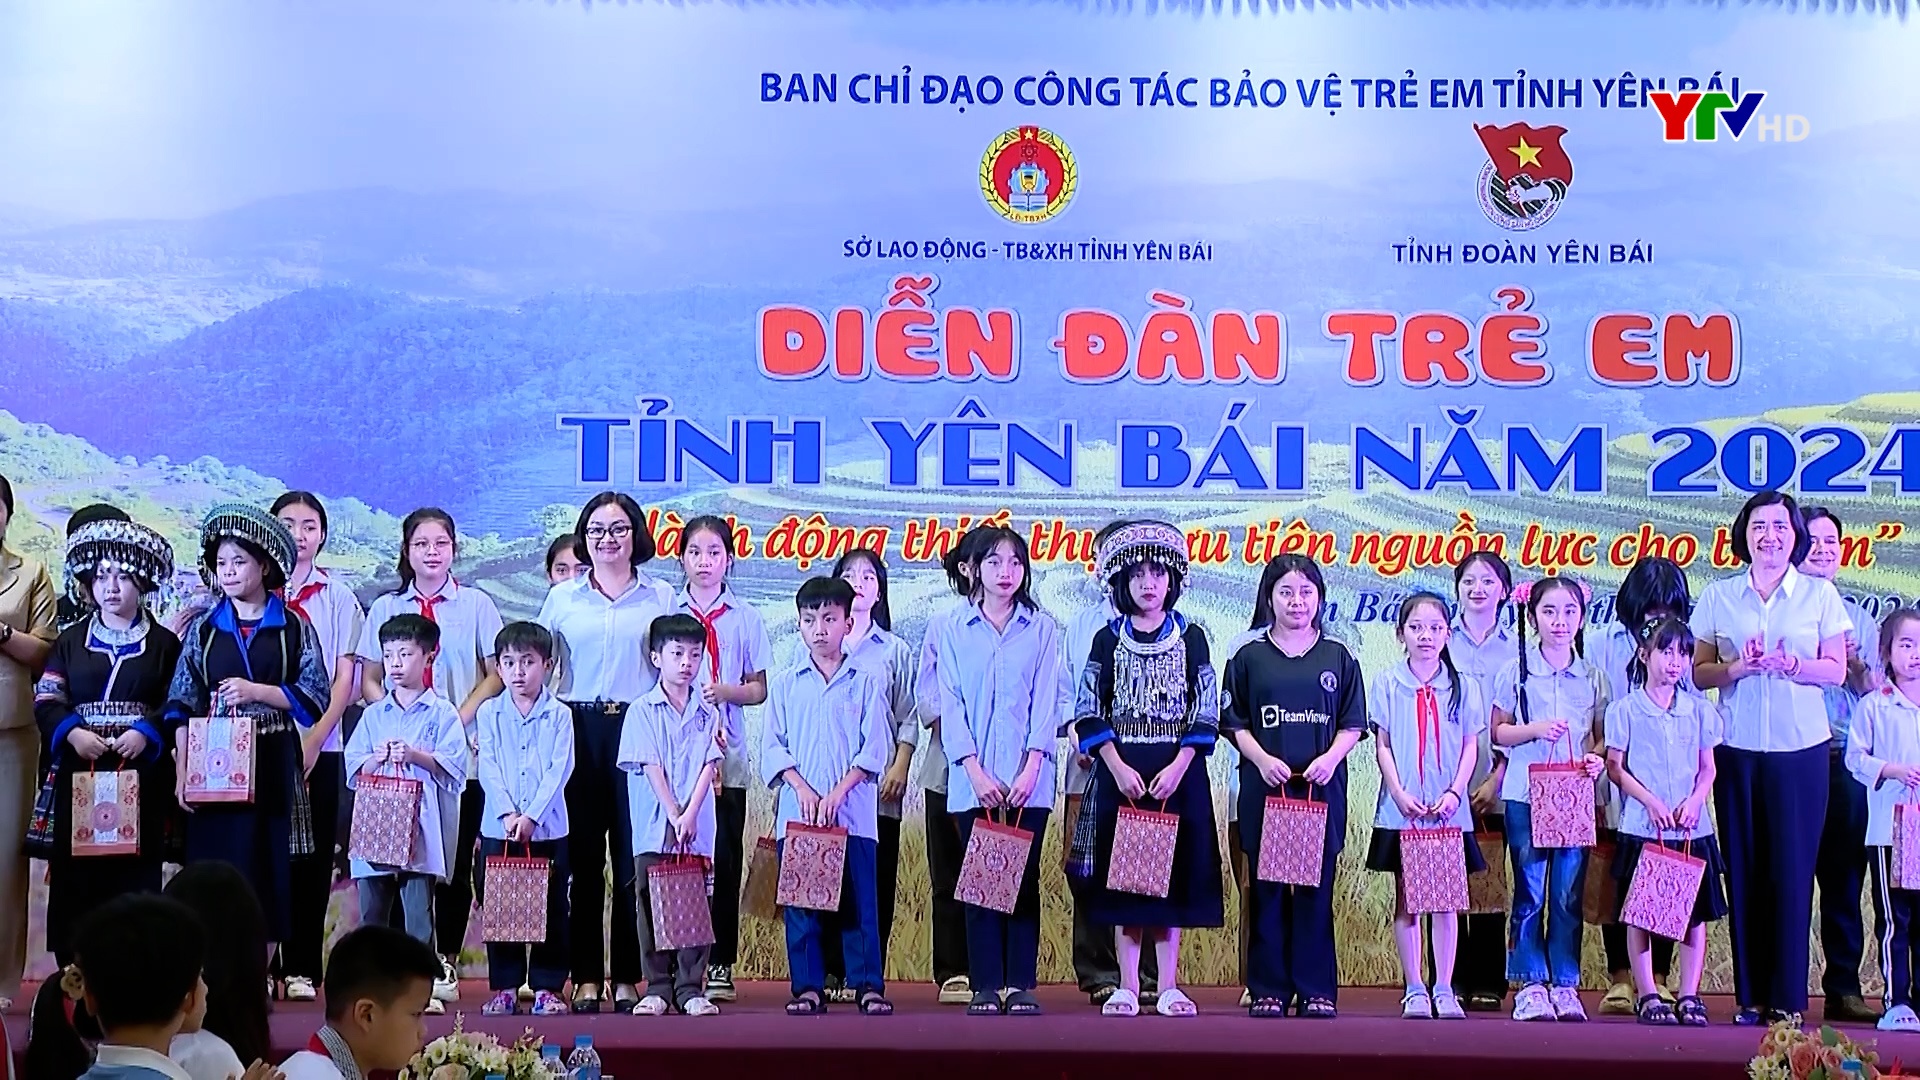 Diễn đàn trẻ em tỉnh Yên Bái năm 2024